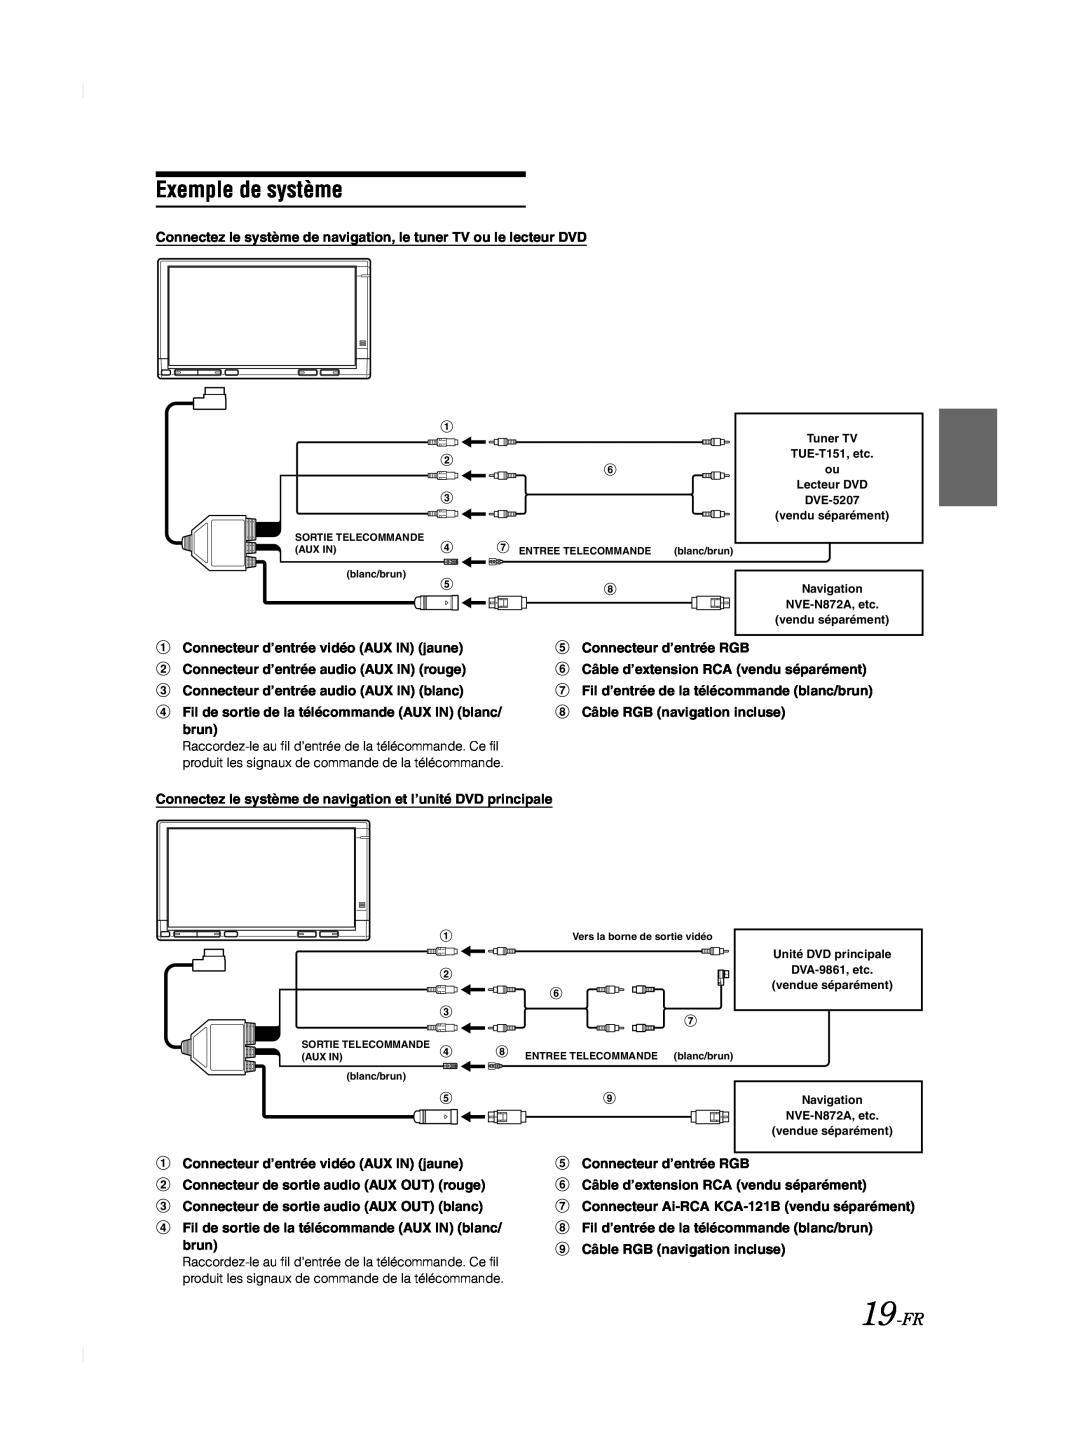 Alpine TME-M740BT owner manual Exemple de système, 19-FR, Connectez le système de navigation, le tuner TV ou le lecteur DVD 